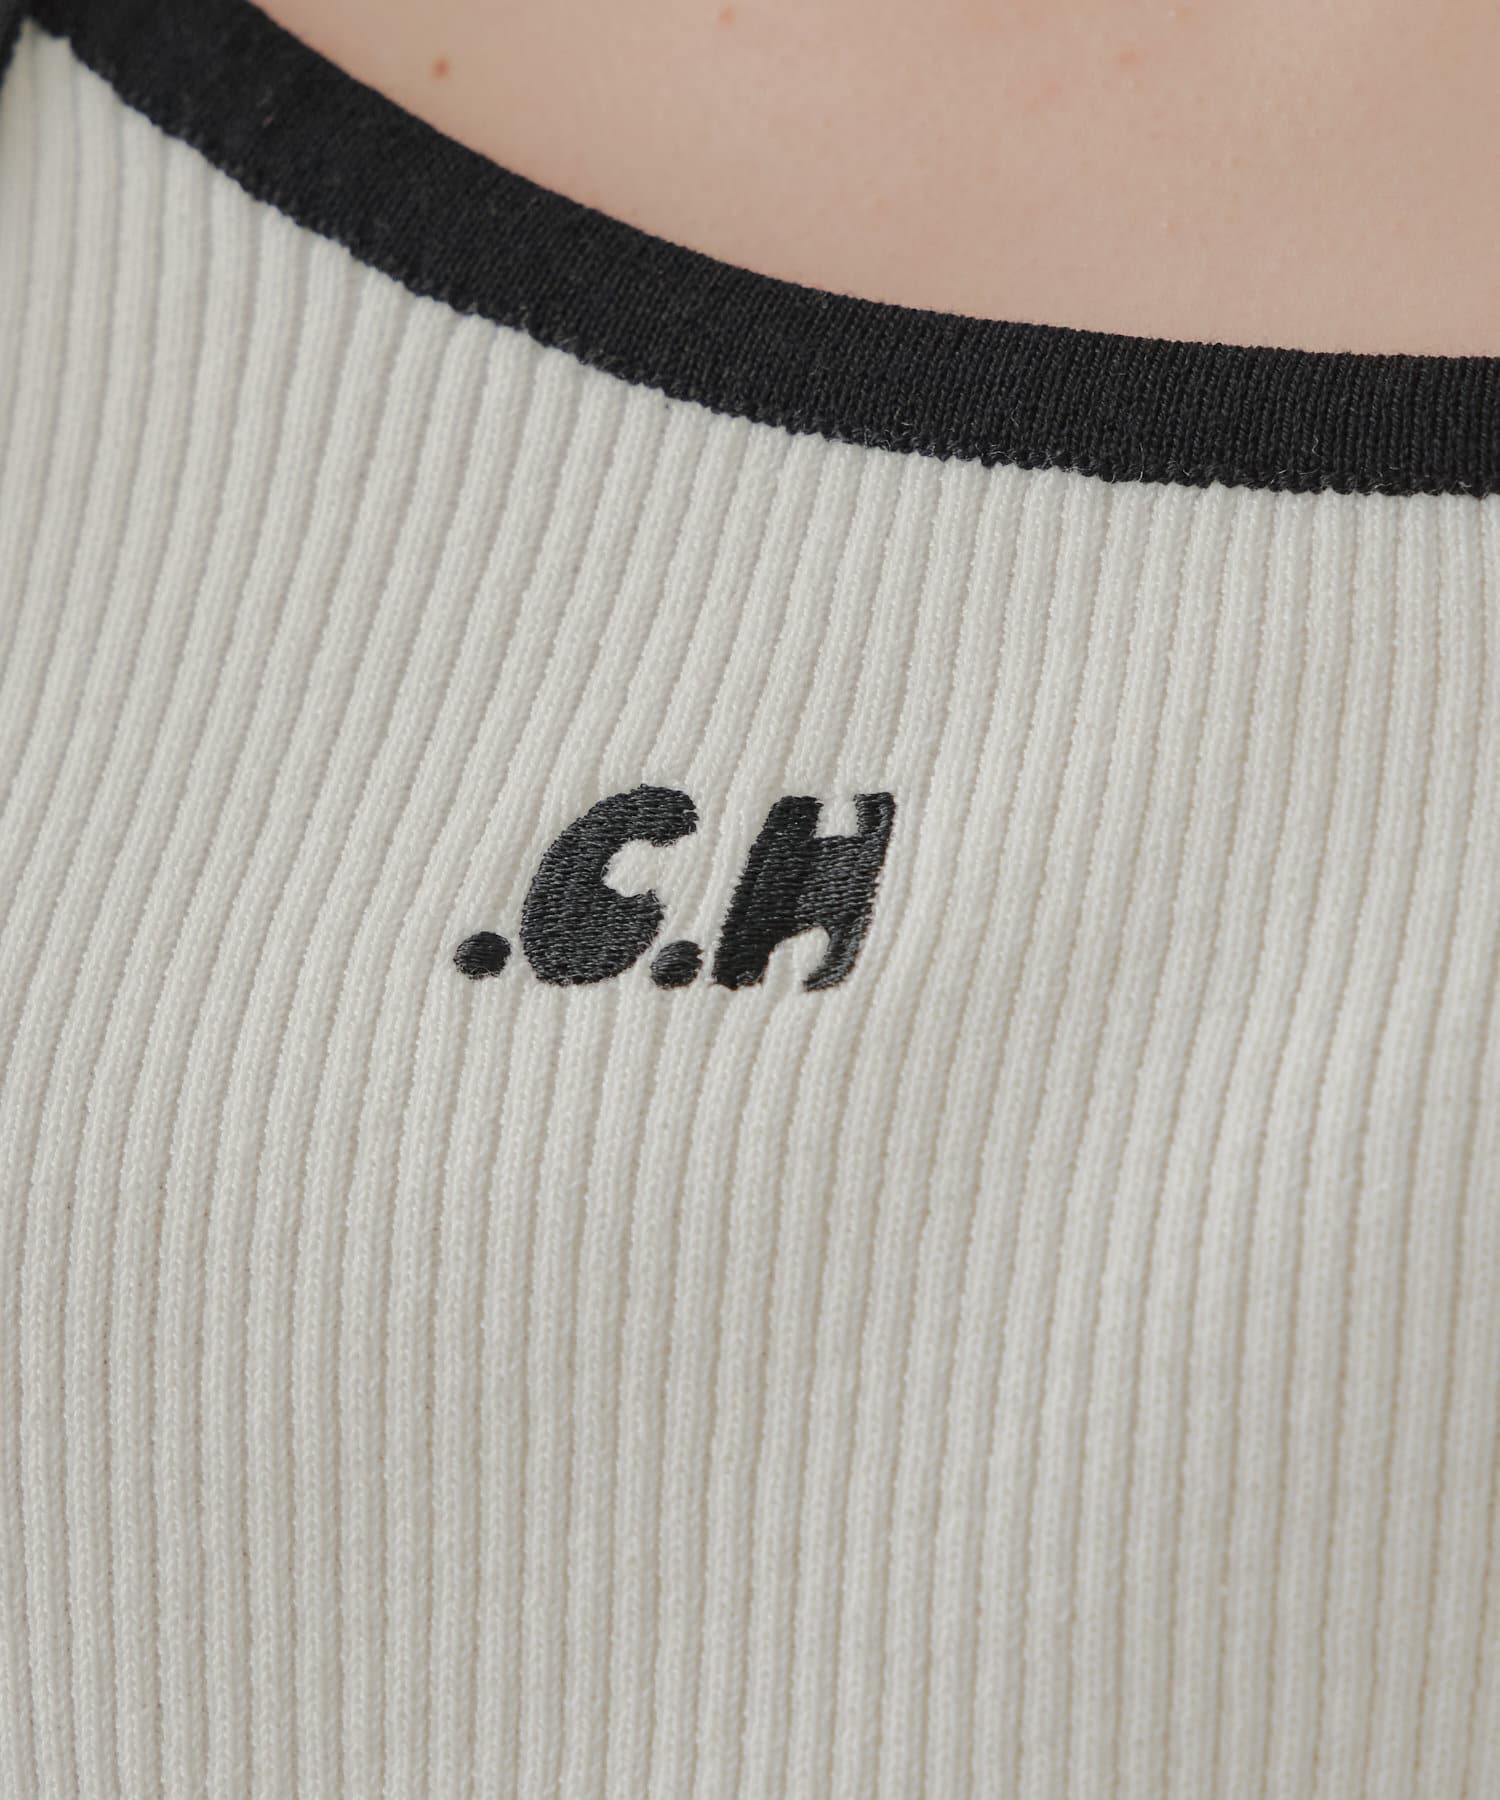 Chico(チコ) チョーカー付アシメ胸刺繍ニット